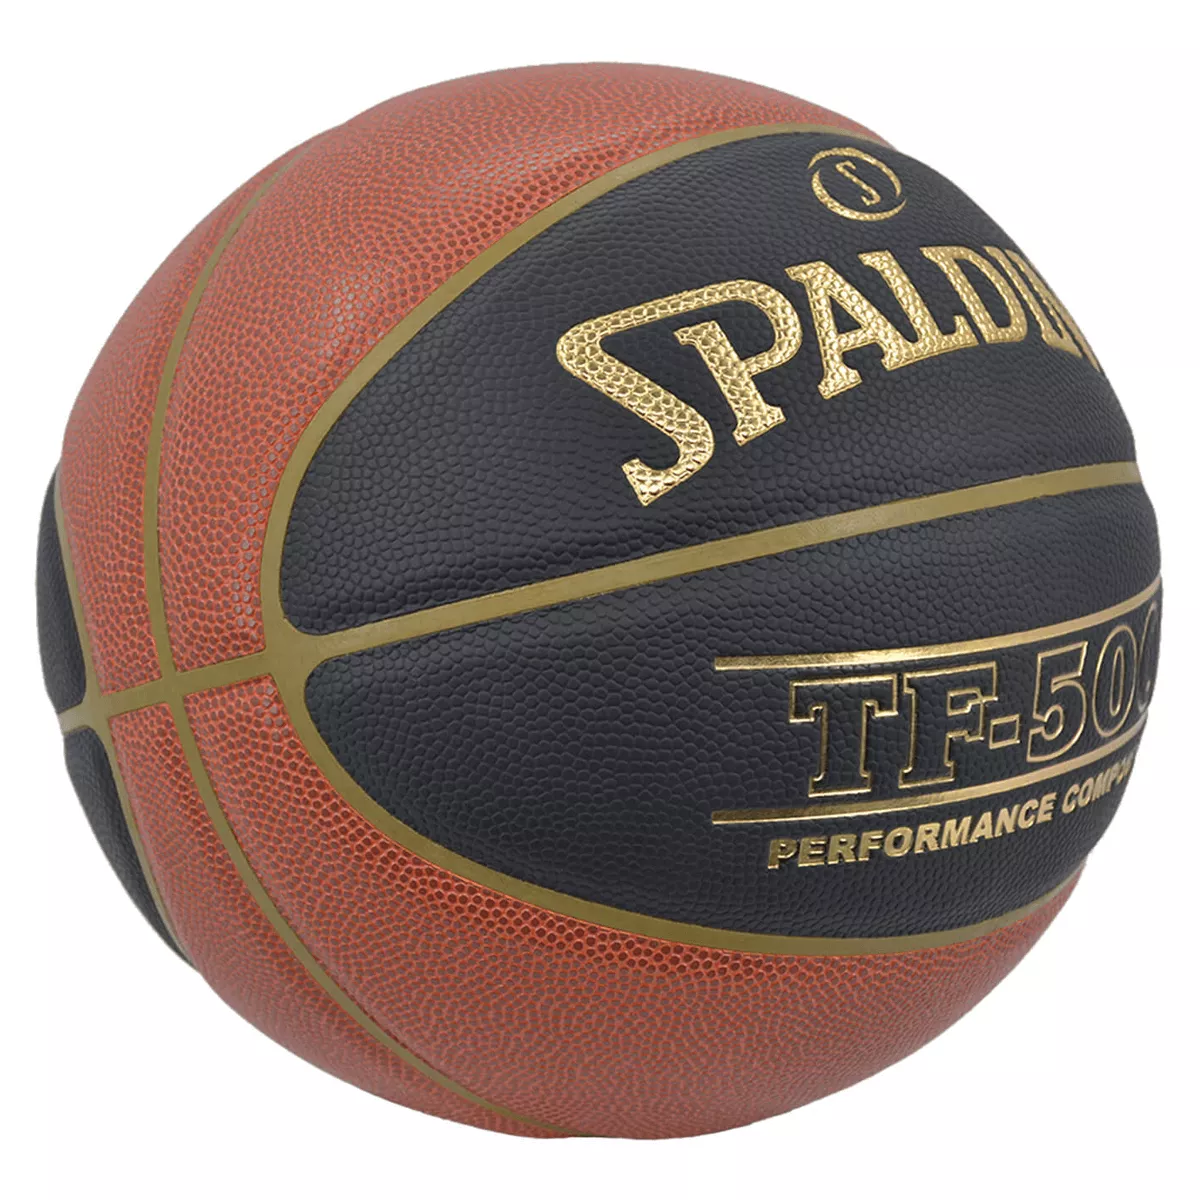 Balón de baloncesto Spalding TF 500 - Talla 7